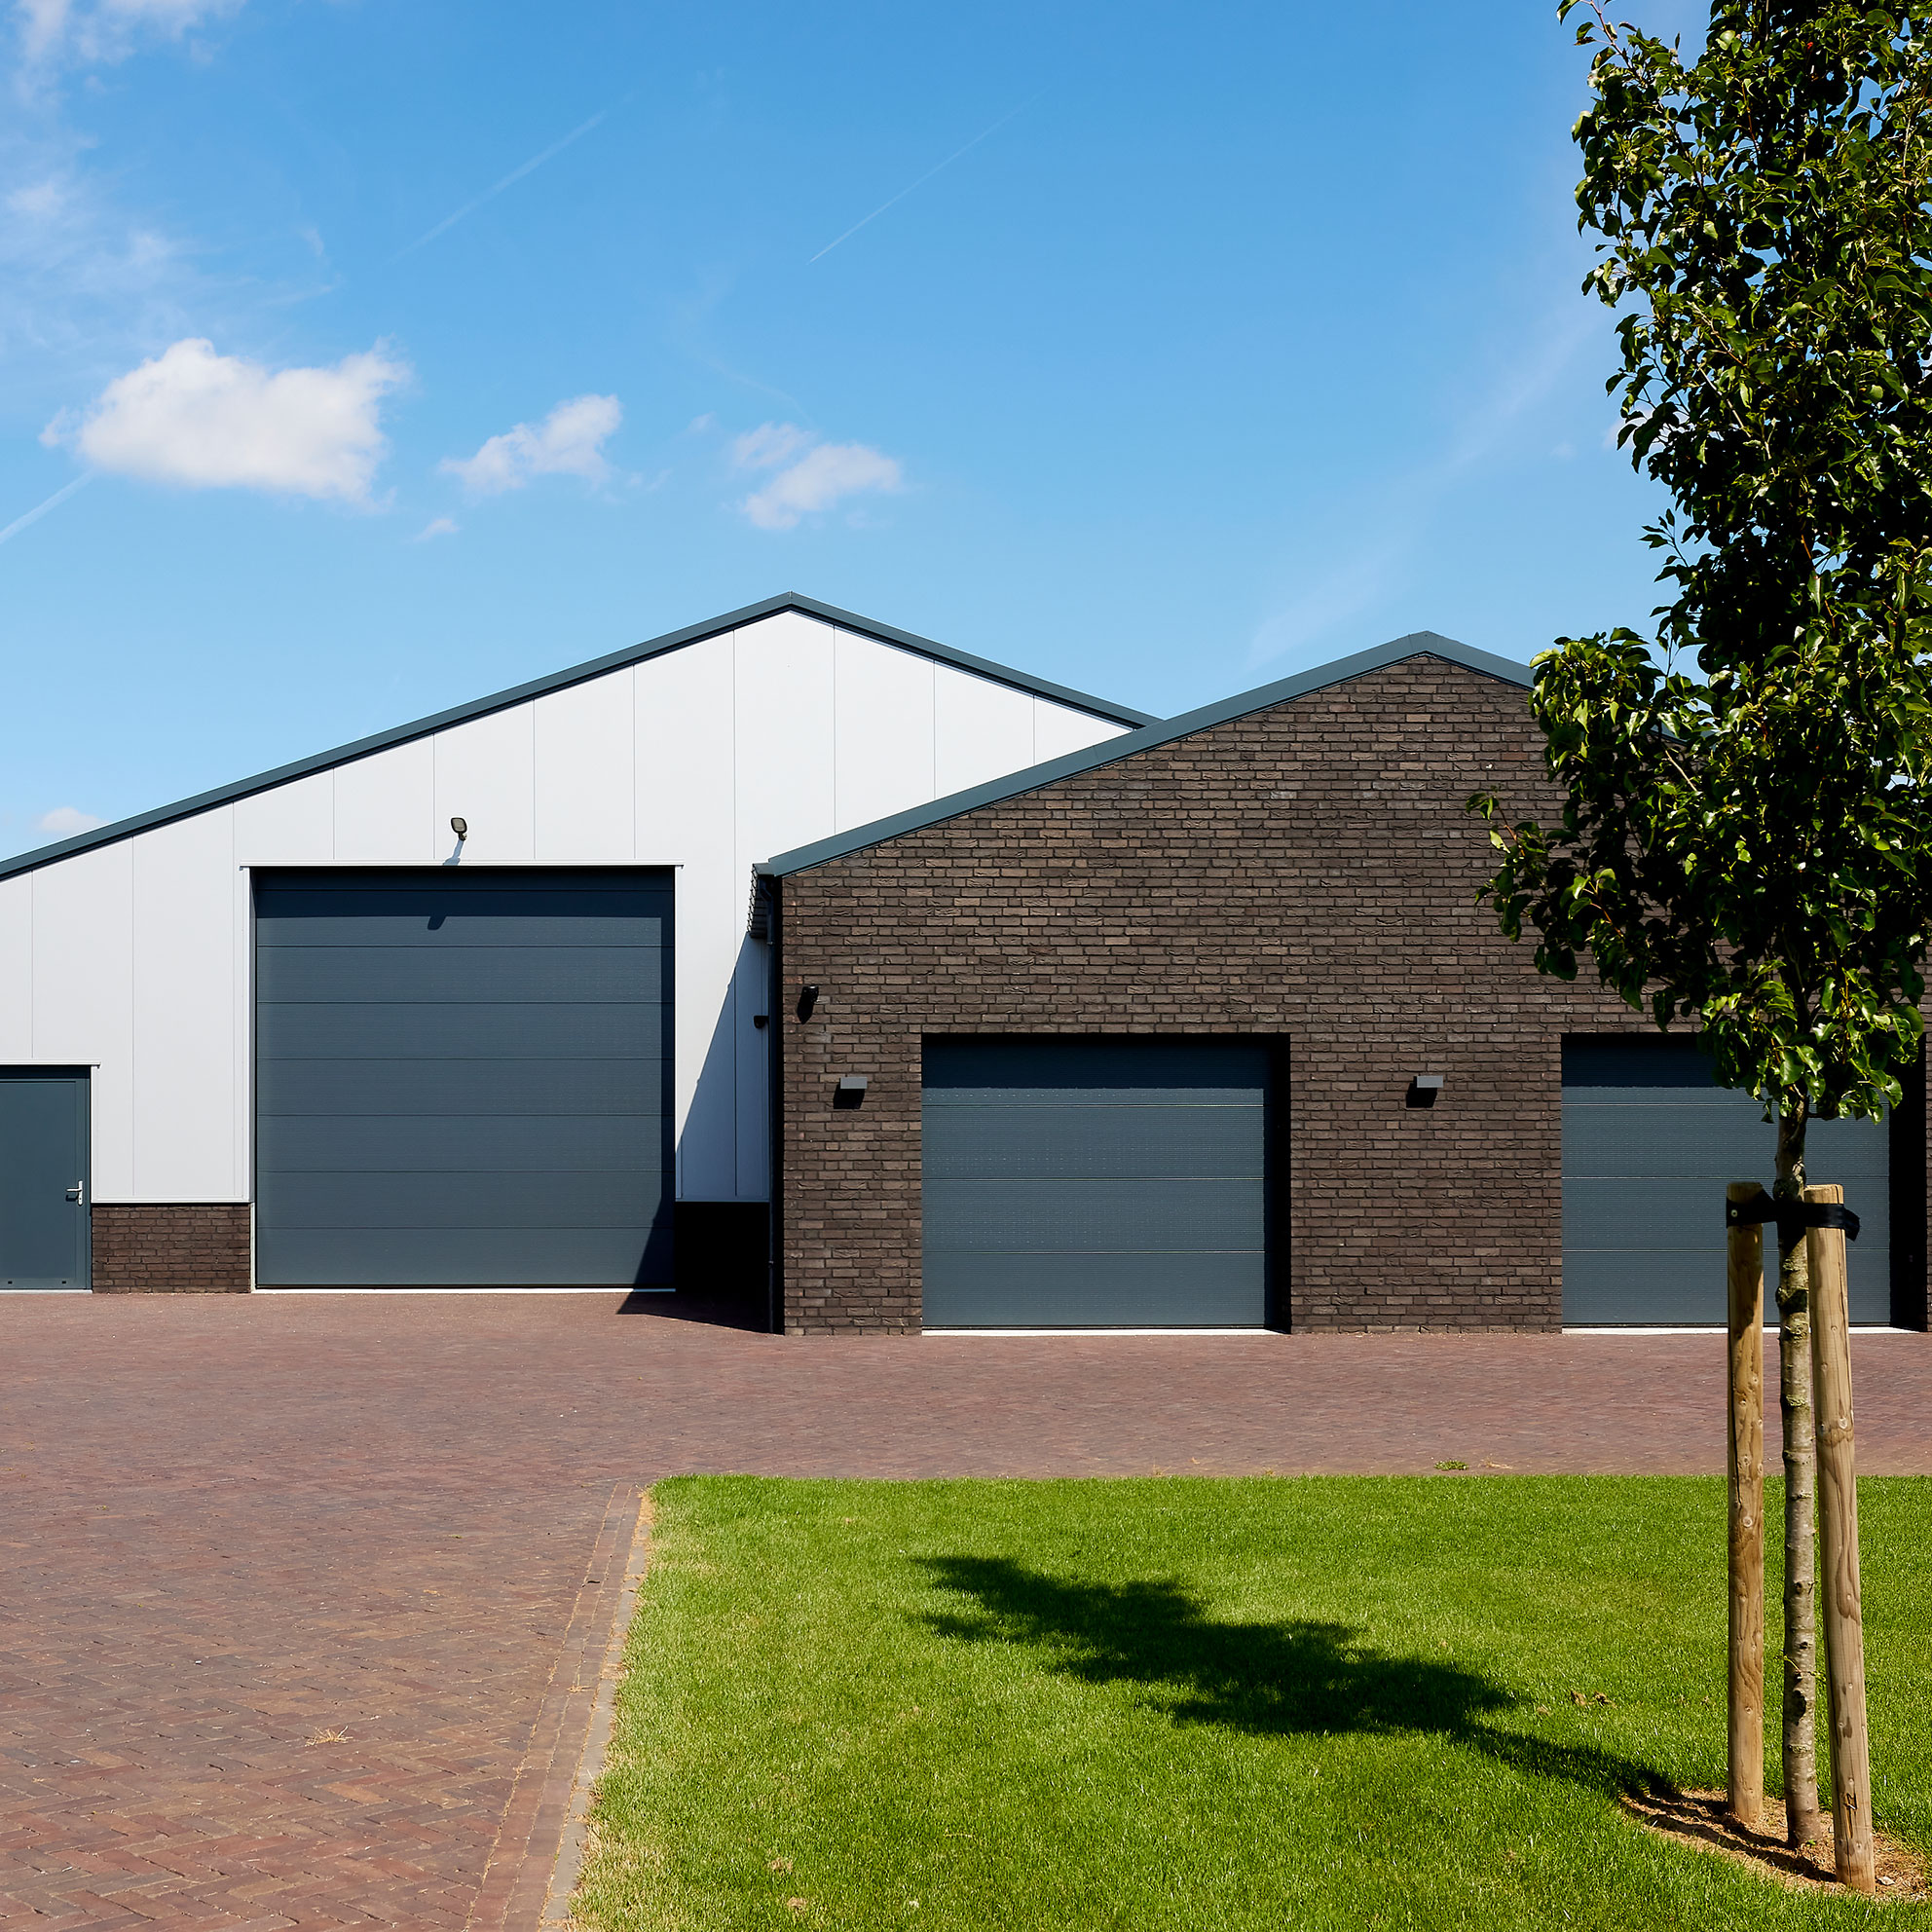 Utiliteitsbouw bedrijfsloods en garage in Kessel door Bouwbedrijf Verlaak